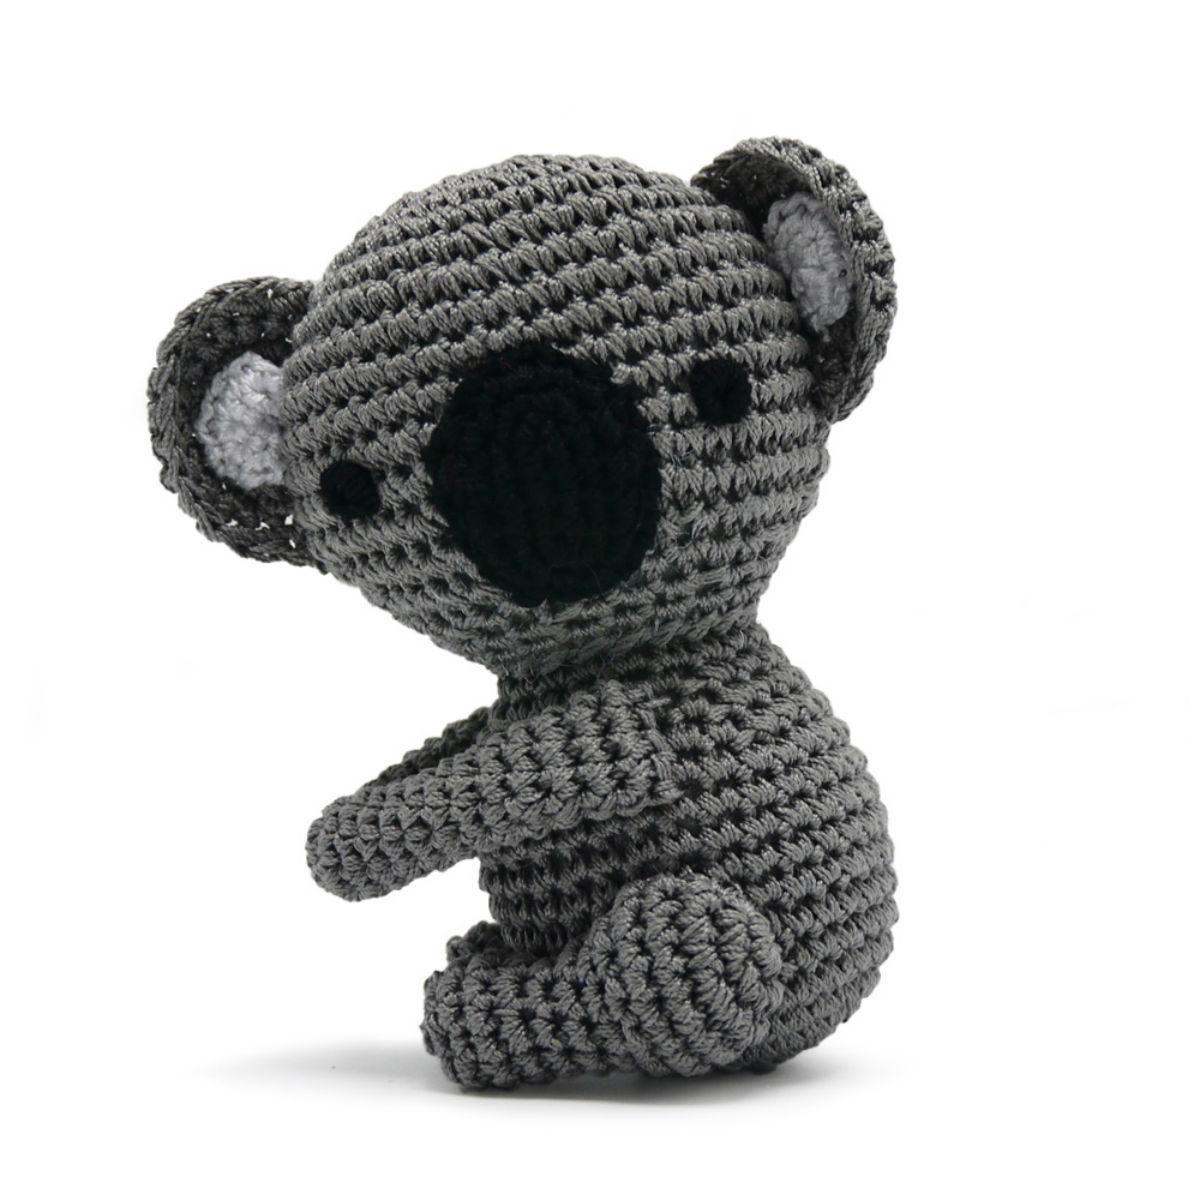 Koala Crochet Dog Toy by Dogo